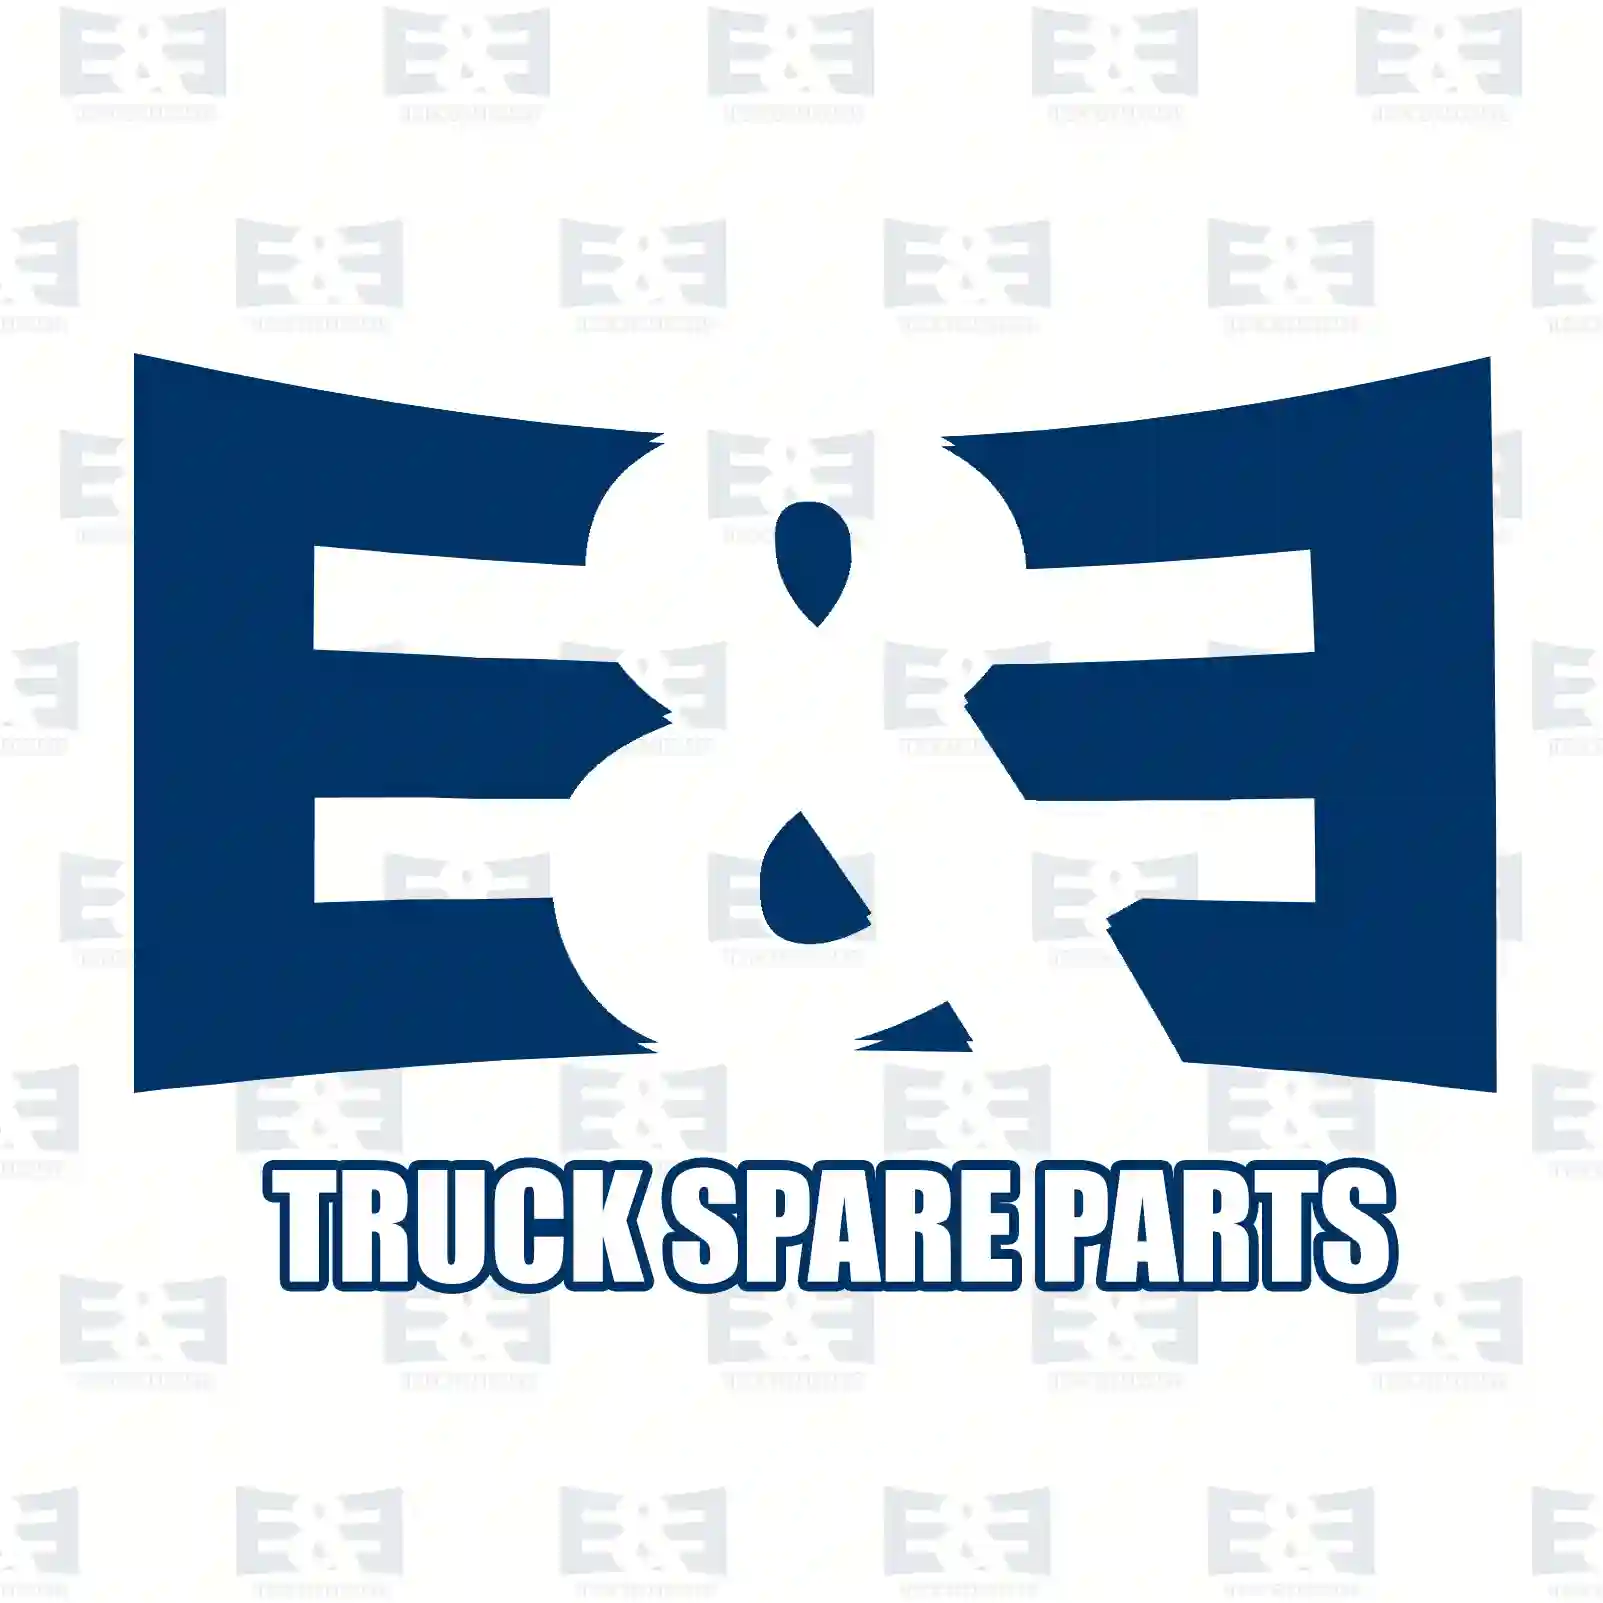 Double drive shaft, right, 2E2276930, 6253301001, 62533 ||  2E2276930 E&E Truck Spare Parts | Truck Spare Parts, Auotomotive Spare Parts Double drive shaft, right, 2E2276930, 6253301001, 62533 ||  2E2276930 E&E Truck Spare Parts | Truck Spare Parts, Auotomotive Spare Parts